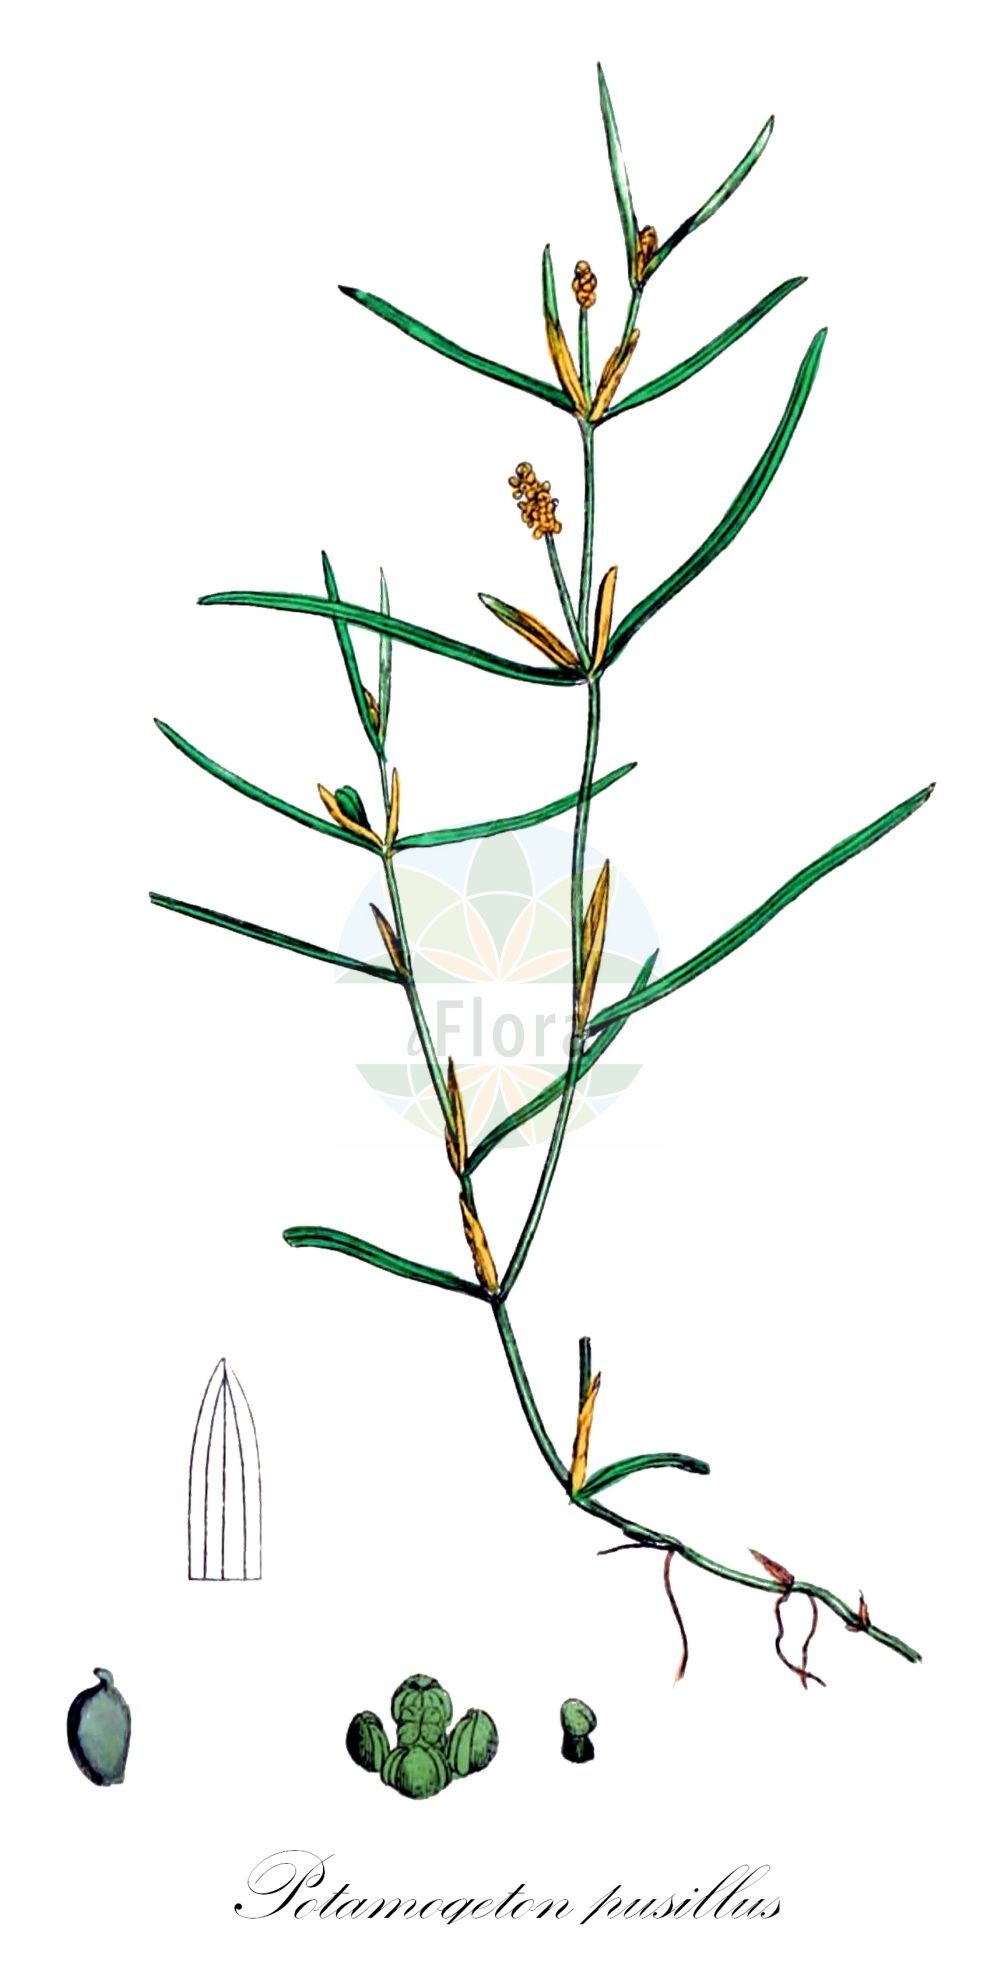 Historische Abbildung von Potamogeton pusillus (Zwerg-Laichkraut - Lesser Pondweed). Das Bild zeigt Blatt, Bluete, Frucht und Same. ---- Historical Drawing of Potamogeton pusillus (Zwerg-Laichkraut - Lesser Pondweed). The image is showing leaf, flower, fruit and seed.(Potamogeton pusillus,Zwerg-Laichkraut,Lesser Pondweed,Potamogeton gracilis,Potamogeton panormitanus,Potamogeton pusillus,Potamogeton skvortsovii,Zwerg-Laichkraut,Kleines Laichkraut,Lesser Pondweed,Slender Pondweed,Small Pondweed,Potamogeton,Laichkraut,Pondweed,Potamogetonaceae,Laichkrautgewächse,Pondweed family,Blatt,Bluete,Frucht,Same,leaf,flower,fruit,seed,Sowerby (1790-1813))